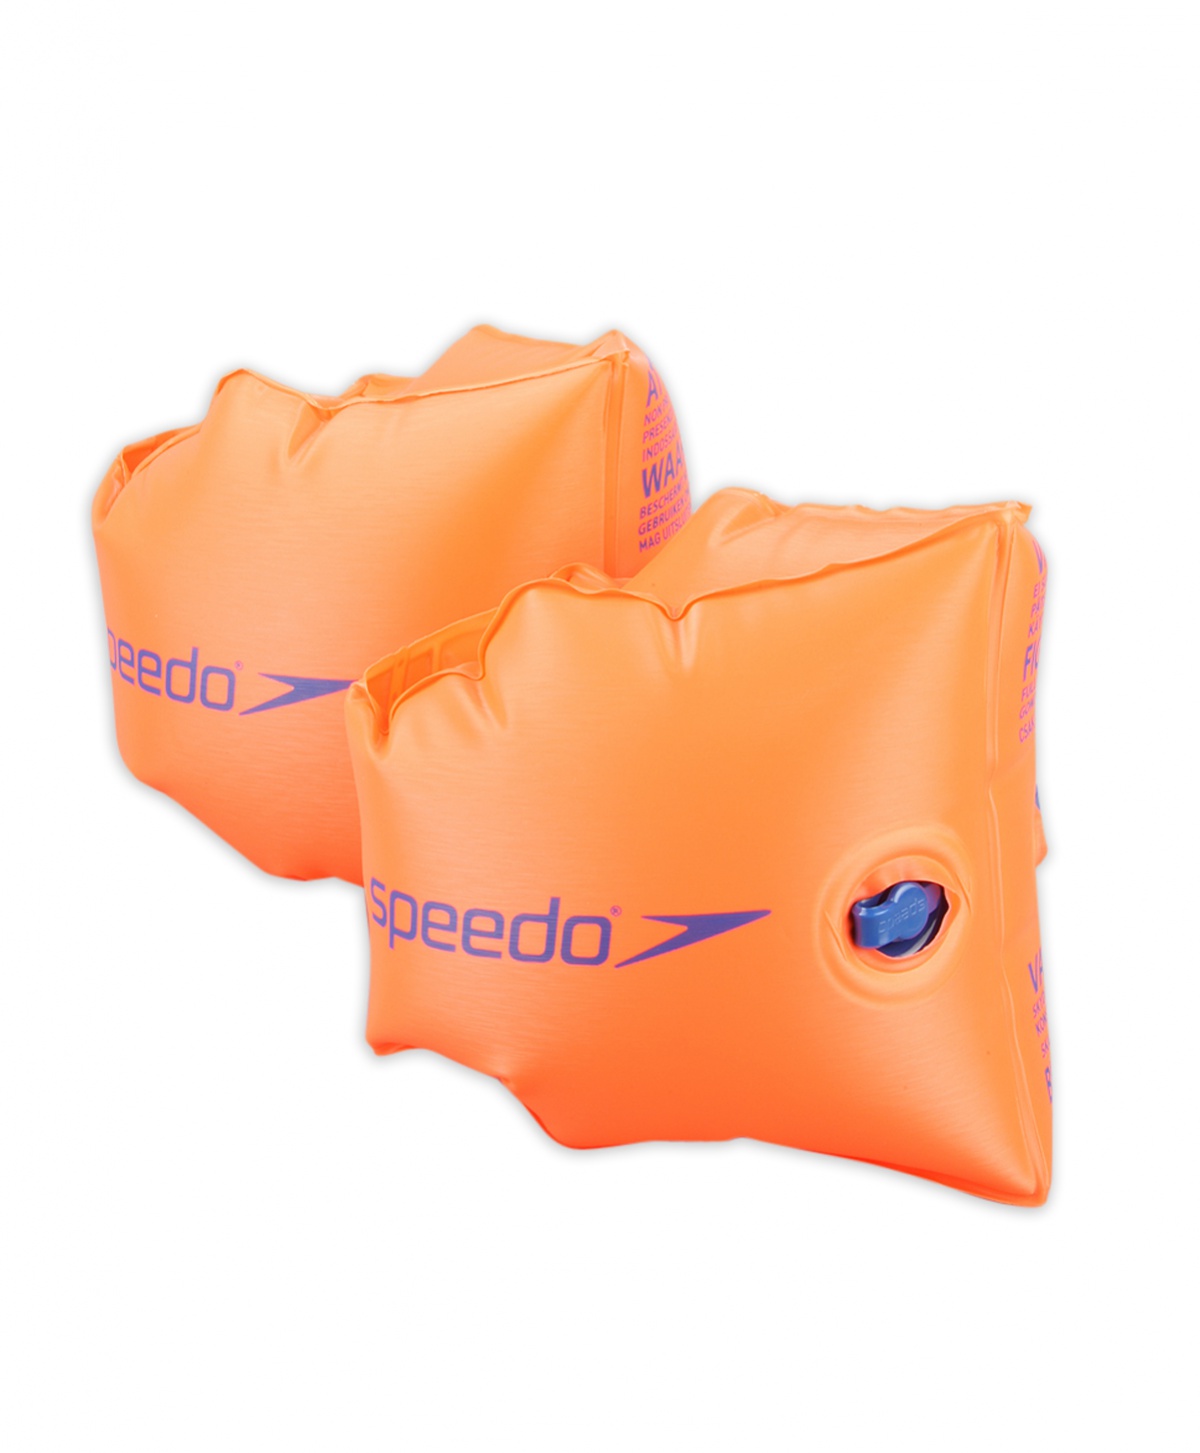 Dětské rukávky Speedo Armbands Orange 1-2 + prodejny Praha, Brno, Plzeň a Ostrava výměna a vrácení do 30 dnů s poštovným zdarma